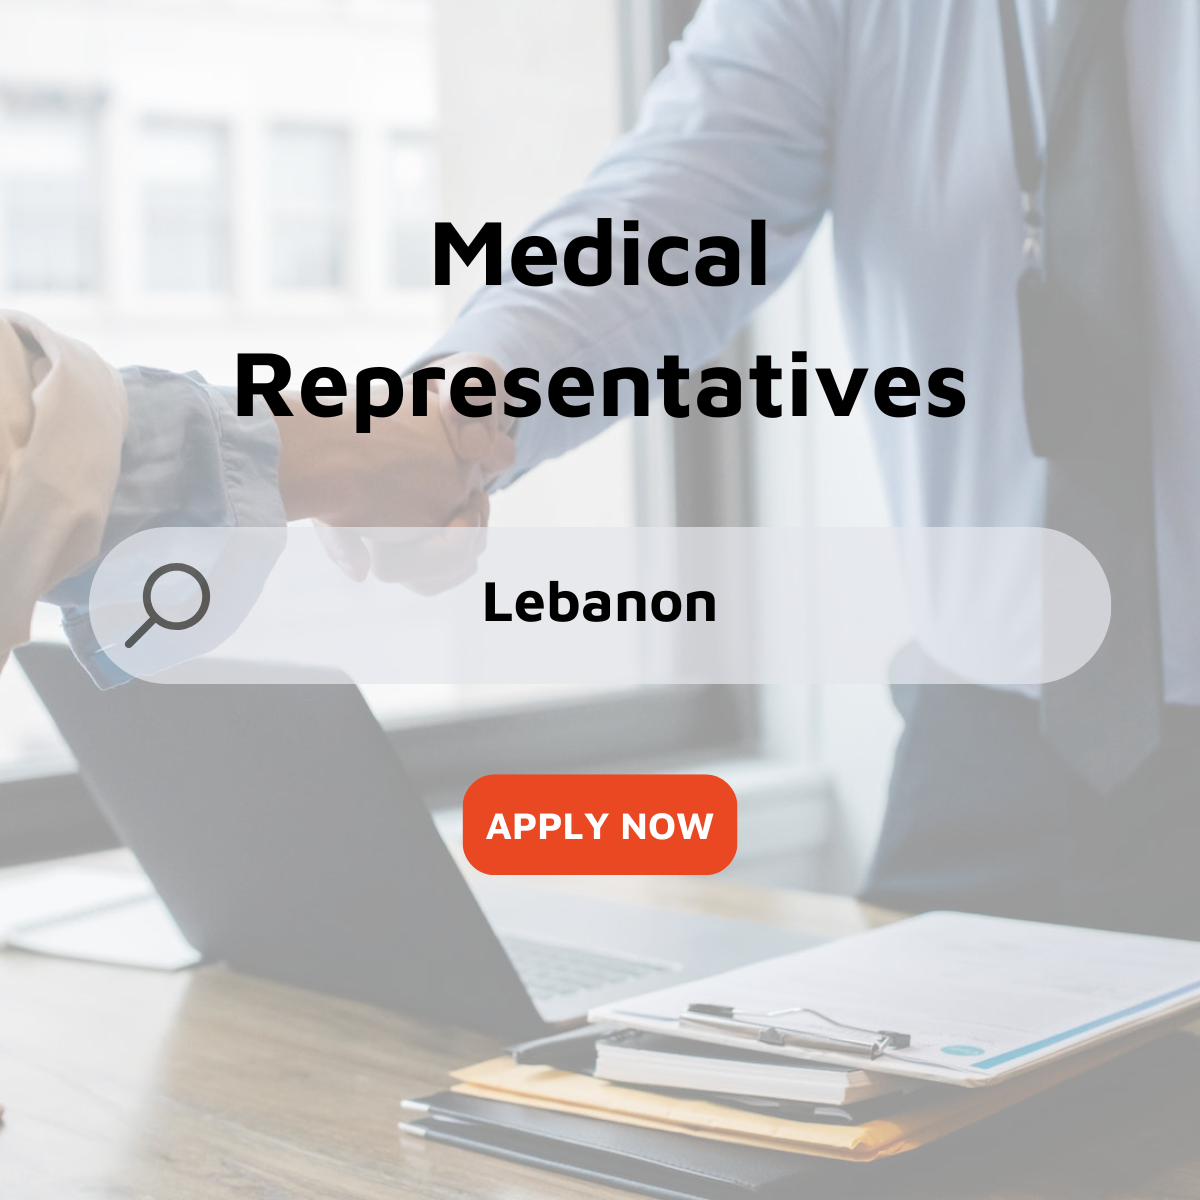 Medical Representatives